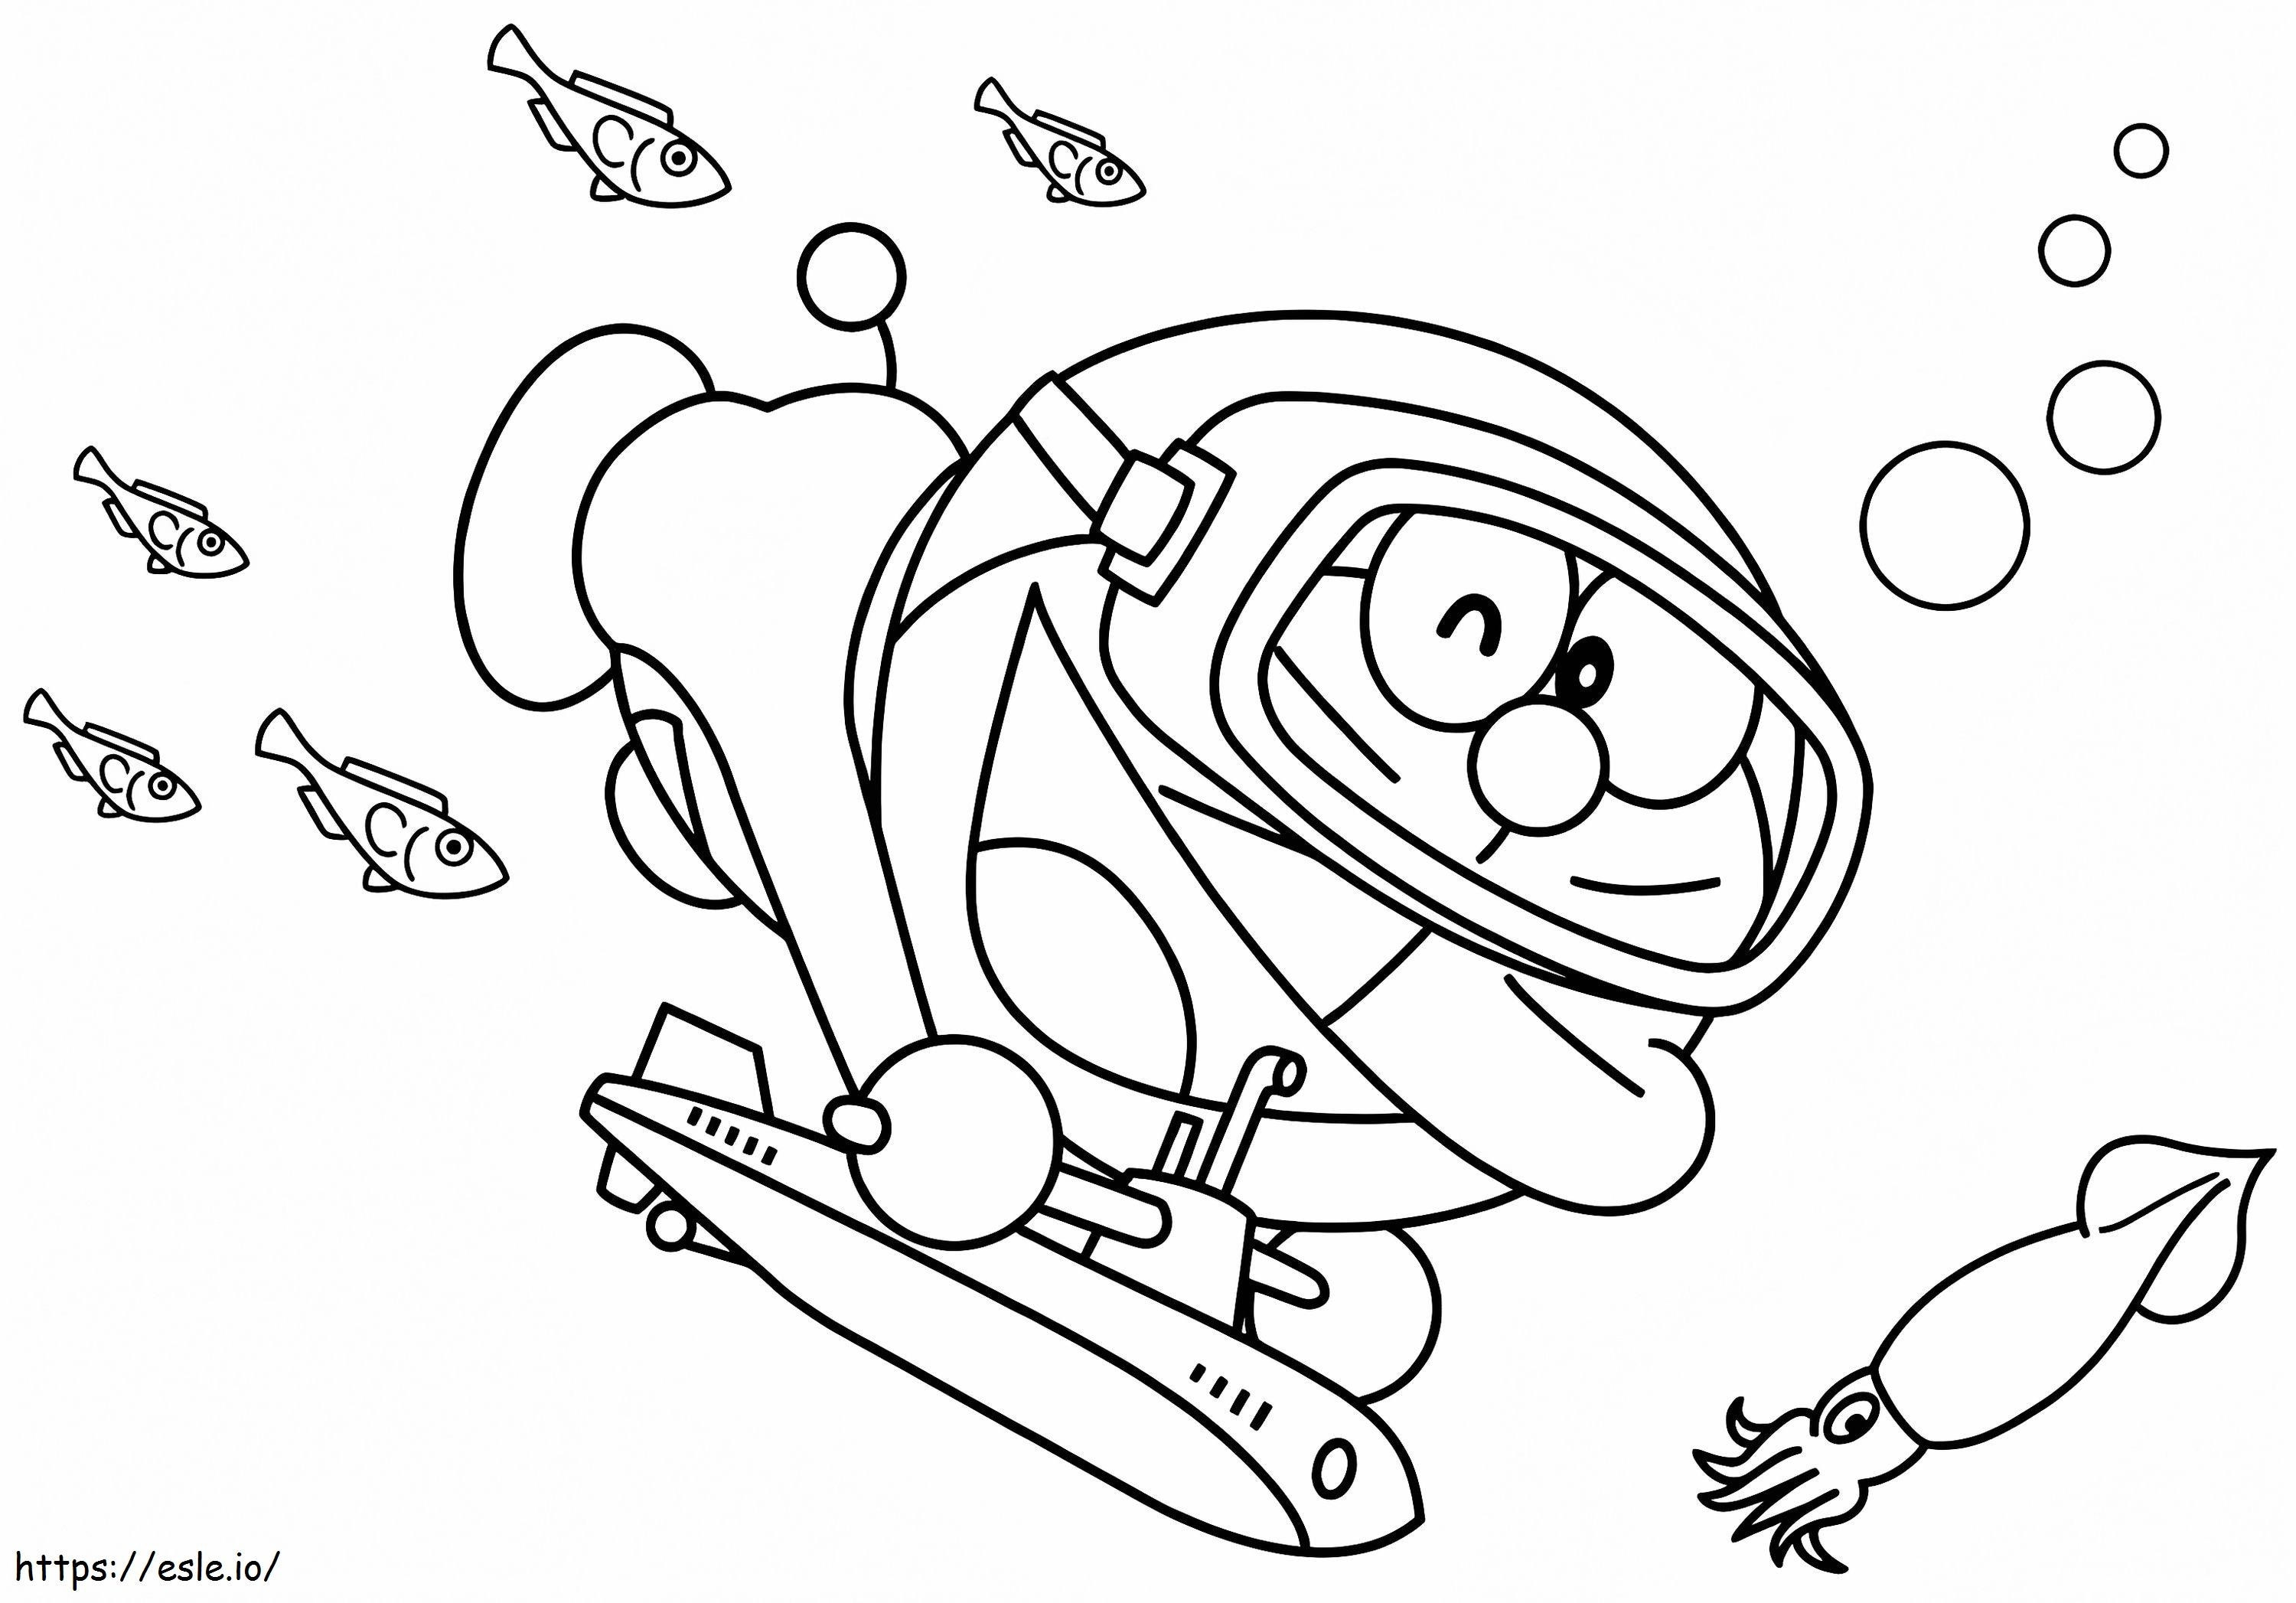 1540784456 Çocuklar için Yazdırılabilir Karikatür Doraemon Boyama Sayfaları Amp Boys 37737 765X534 1 boyama